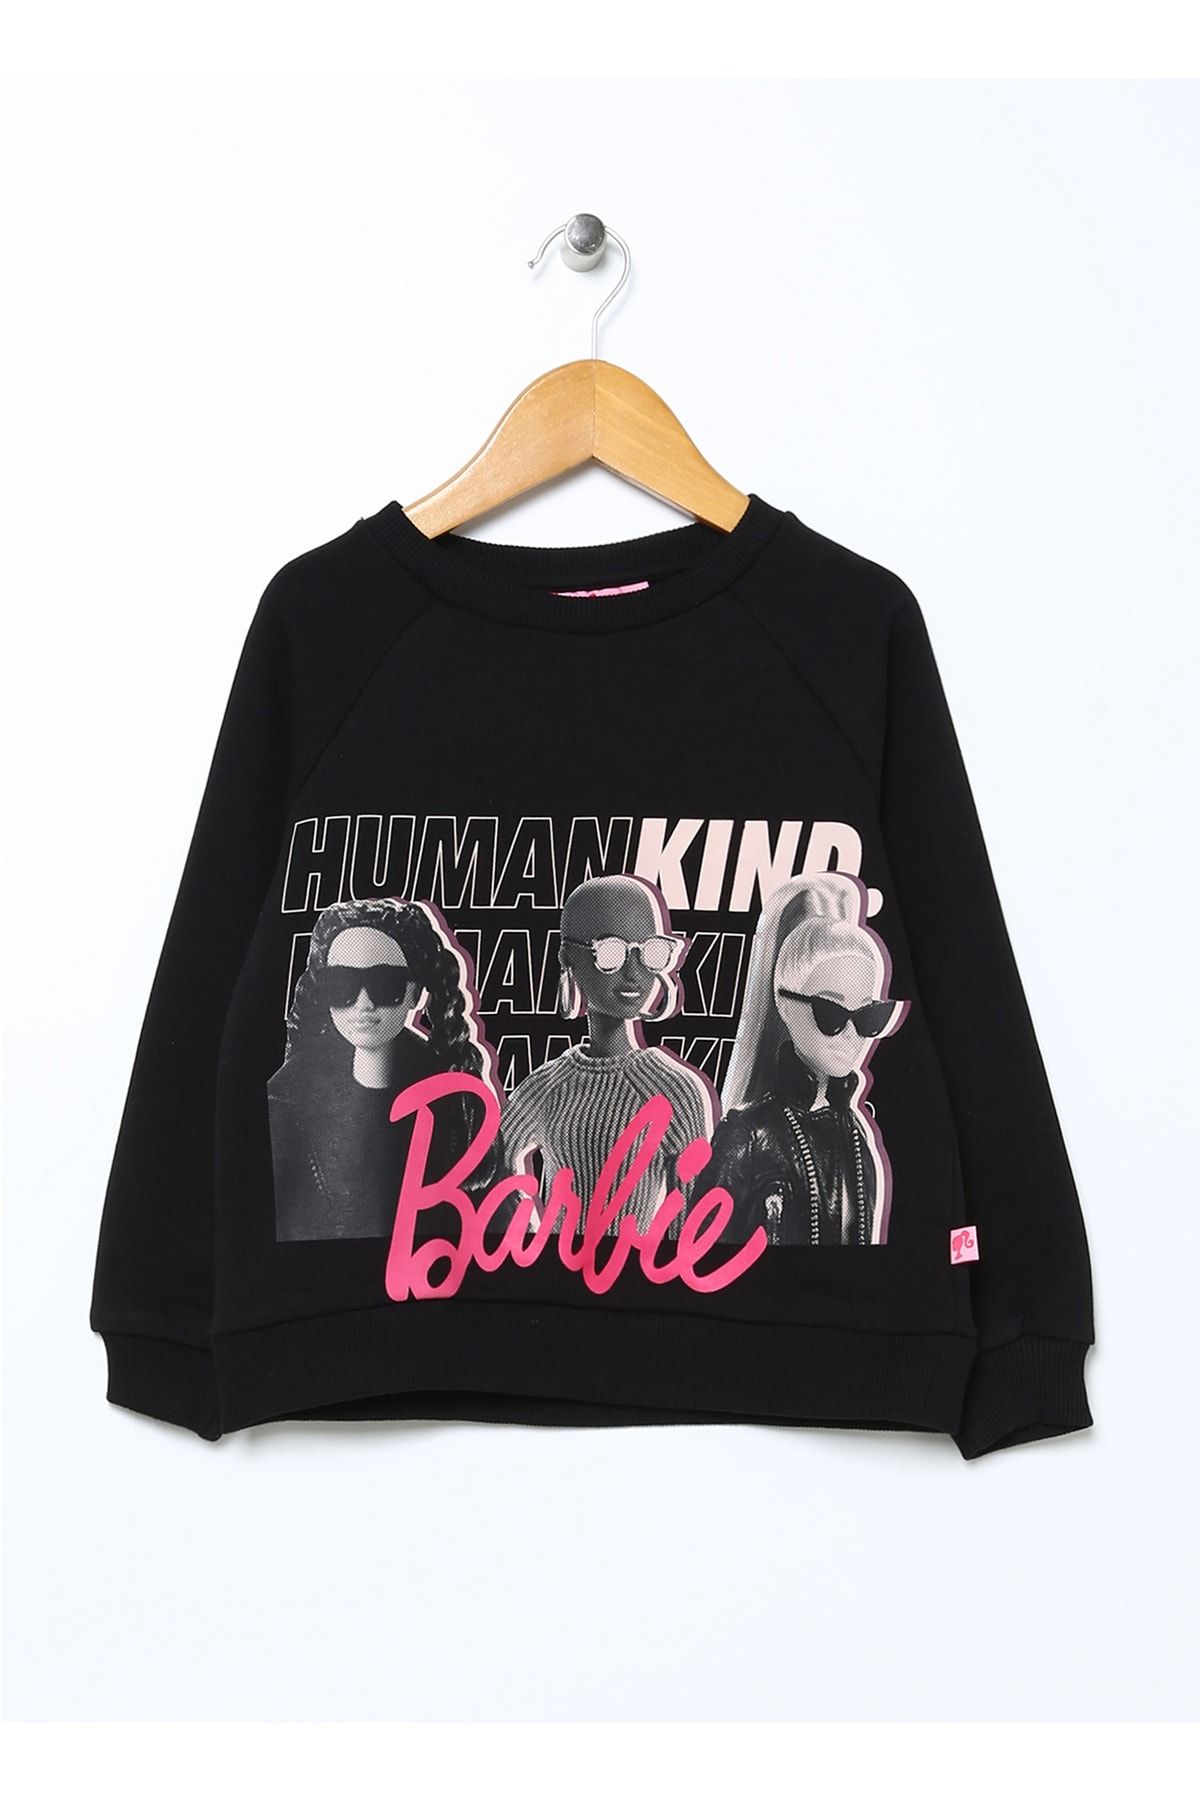 Barbie Baskılı Kız Çocuk Siyah Sweatshirt 22bw-55